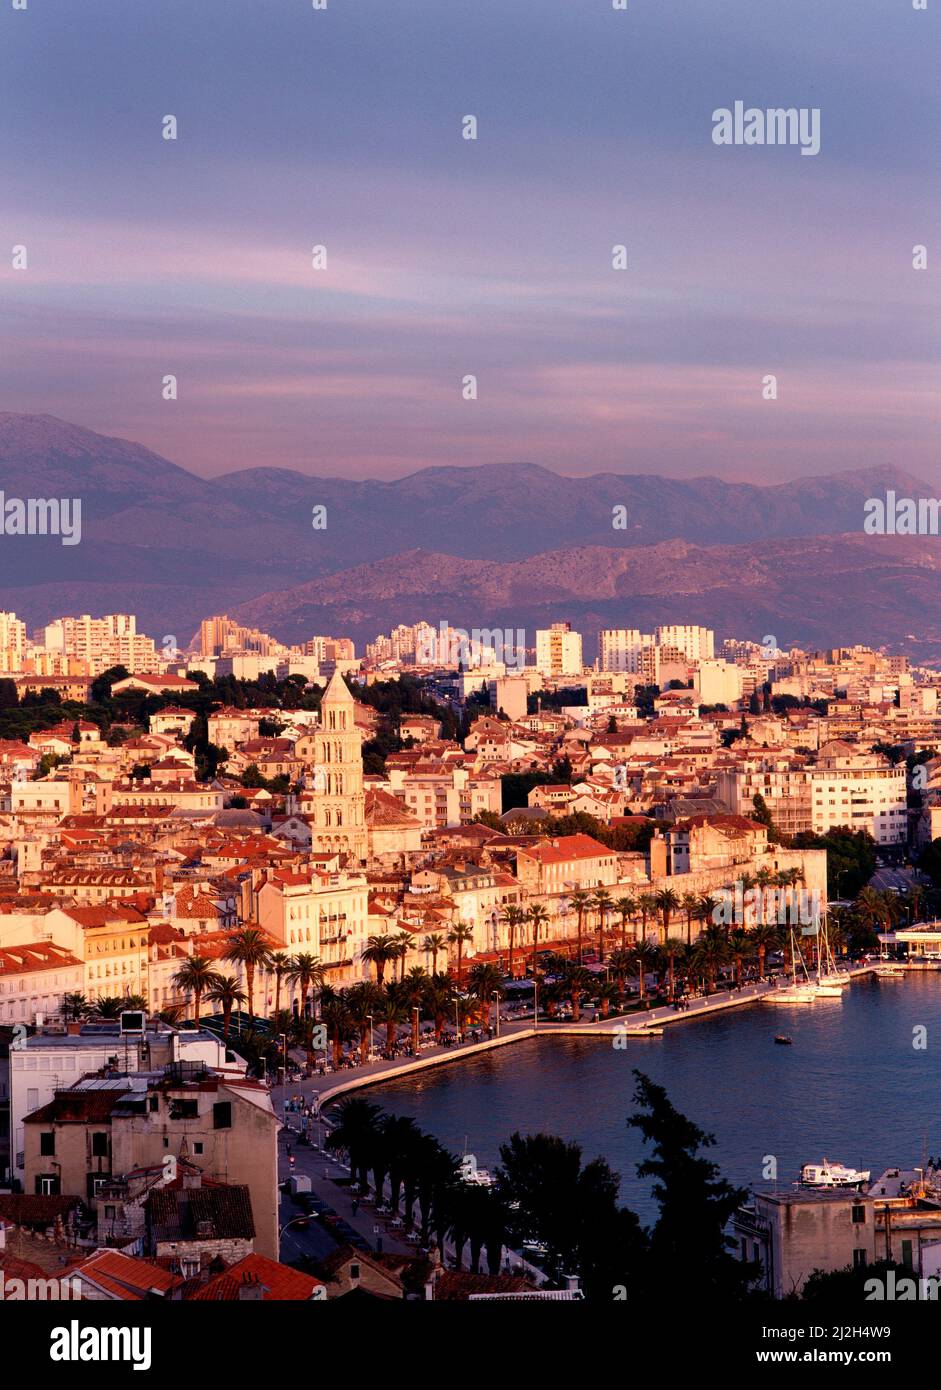 City of Split, Croatia Stock Photo